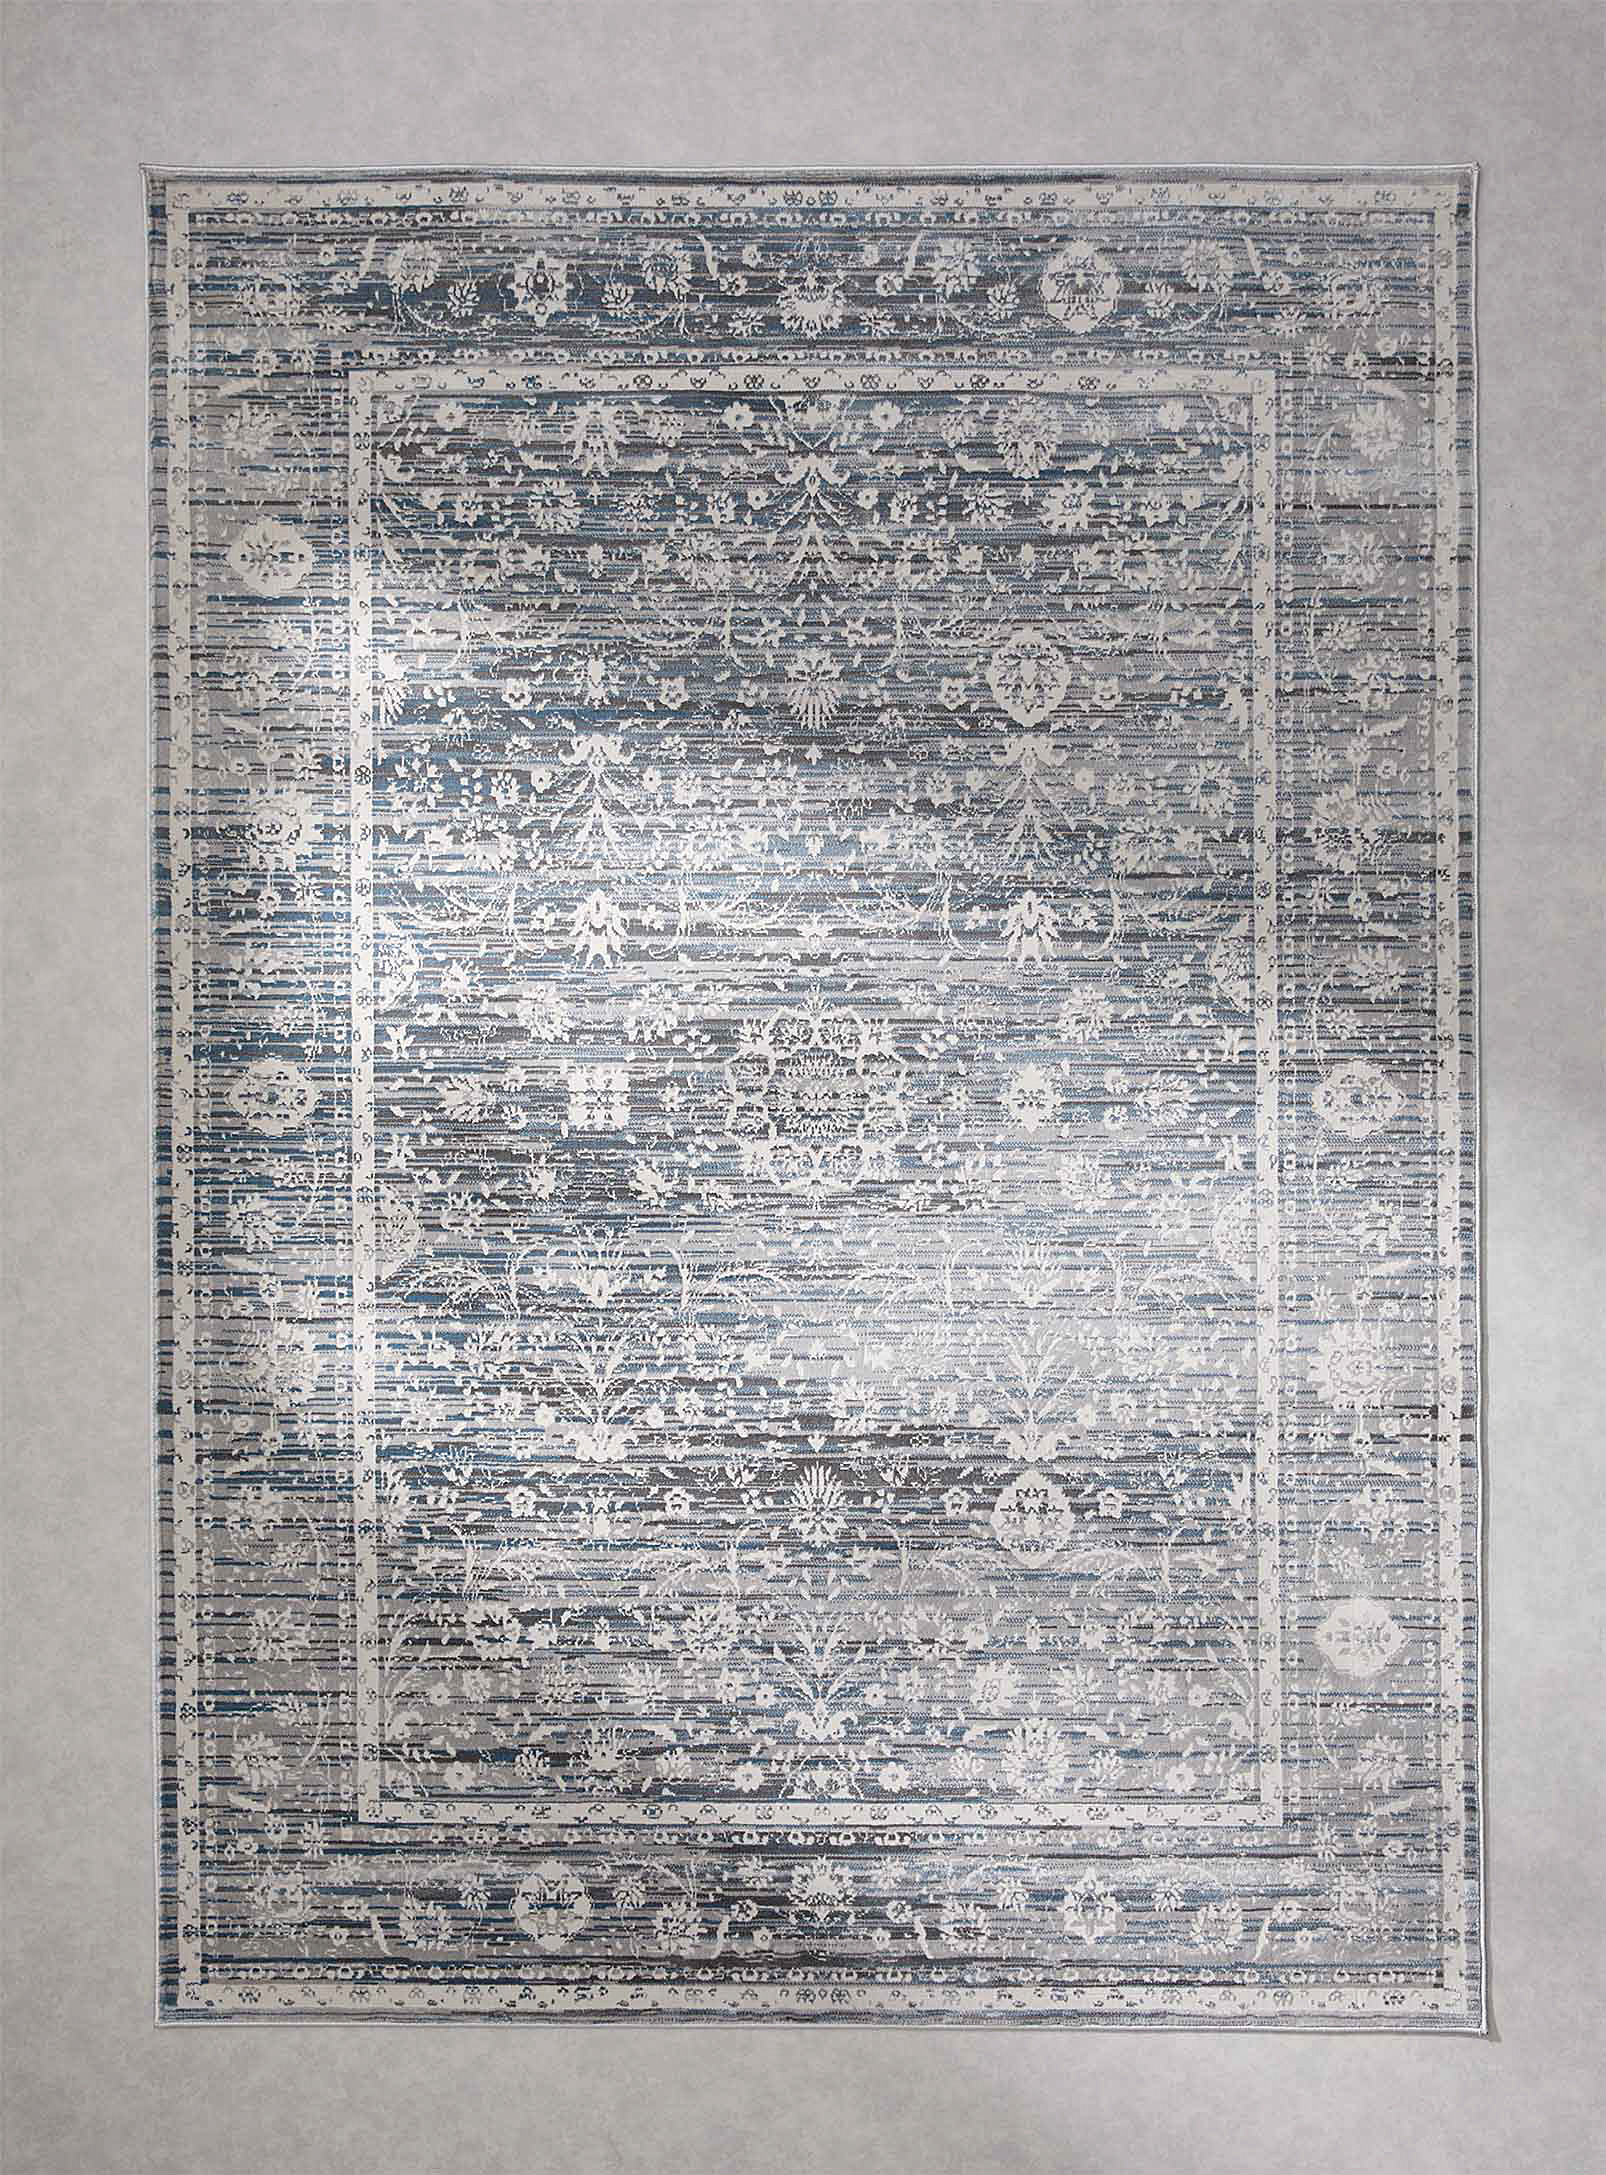 Simons Maison - Le tapis chiné tapisserie florale Voir nos formats offerts